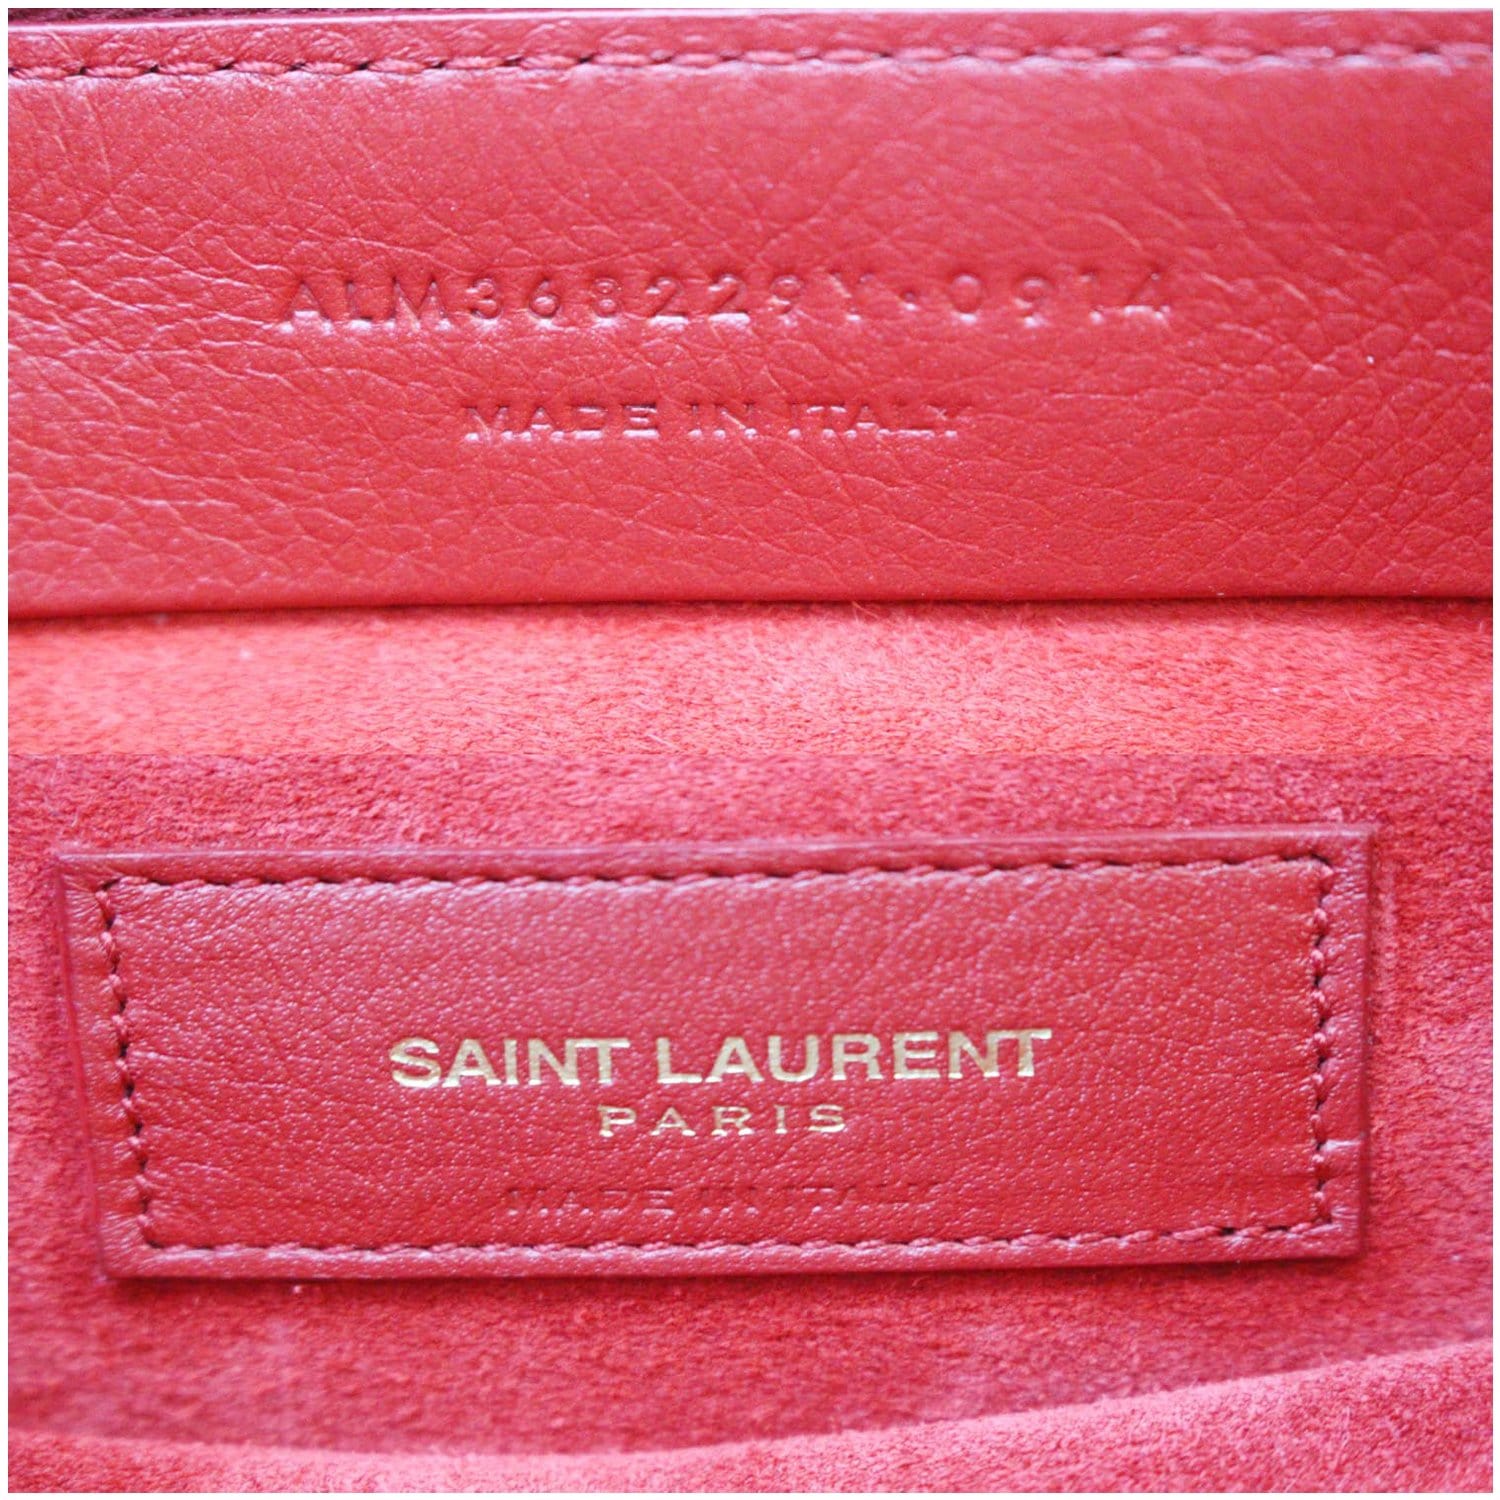 Yves Saint Laurent Muse Two Bag Saint Laurent Paris